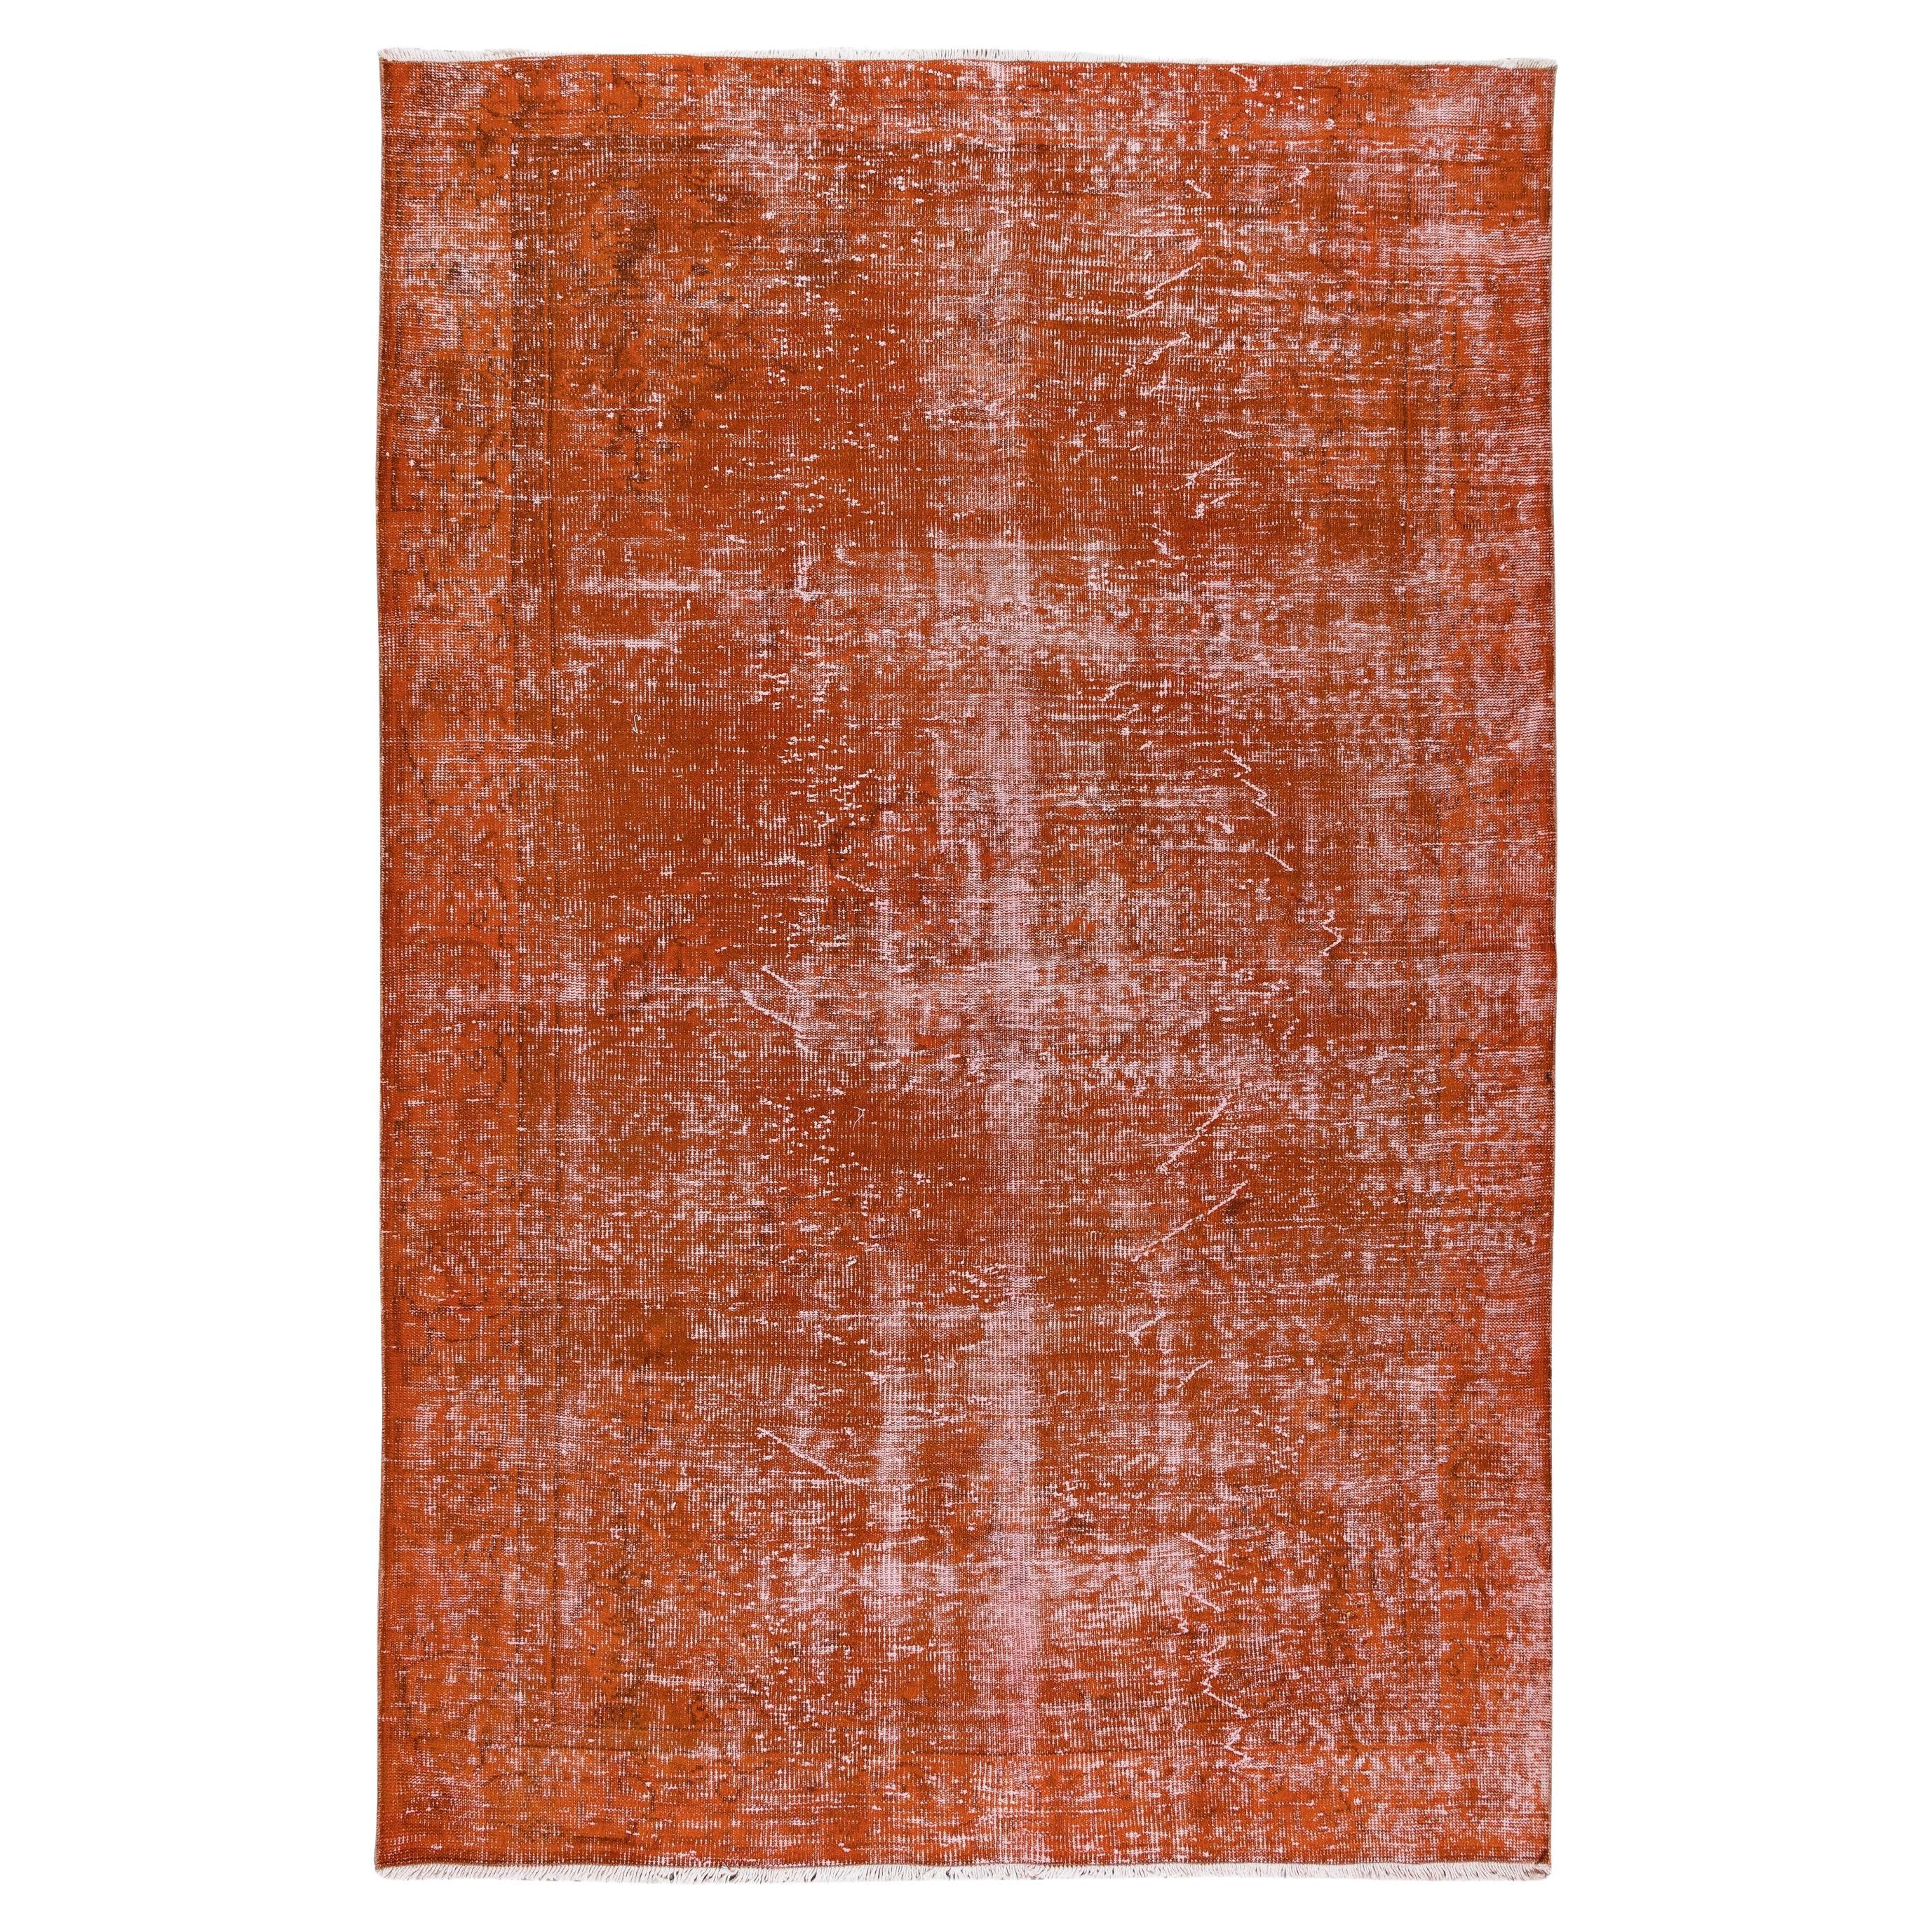 6.6x10 Ft Handgefertigter türkischer Teppich in Orange, neu gefärbt, für moderne Inneneinrichtung im Angebot